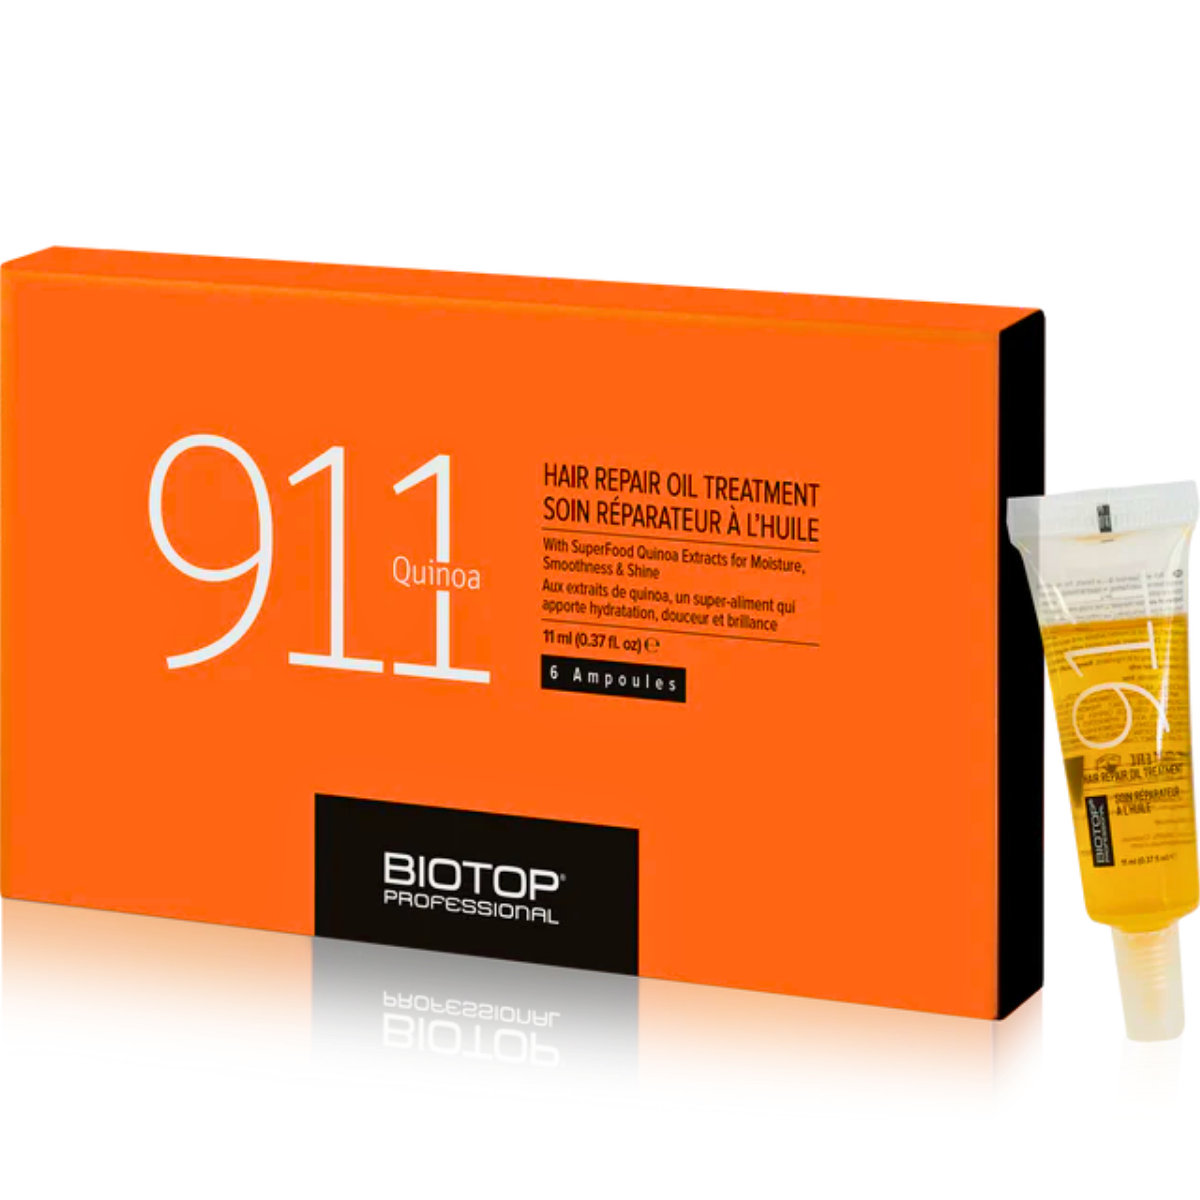 אמפולות BIOTOP 911 לשיקום שיער פגום וחסר חיות ביוטופ 6 יחידות